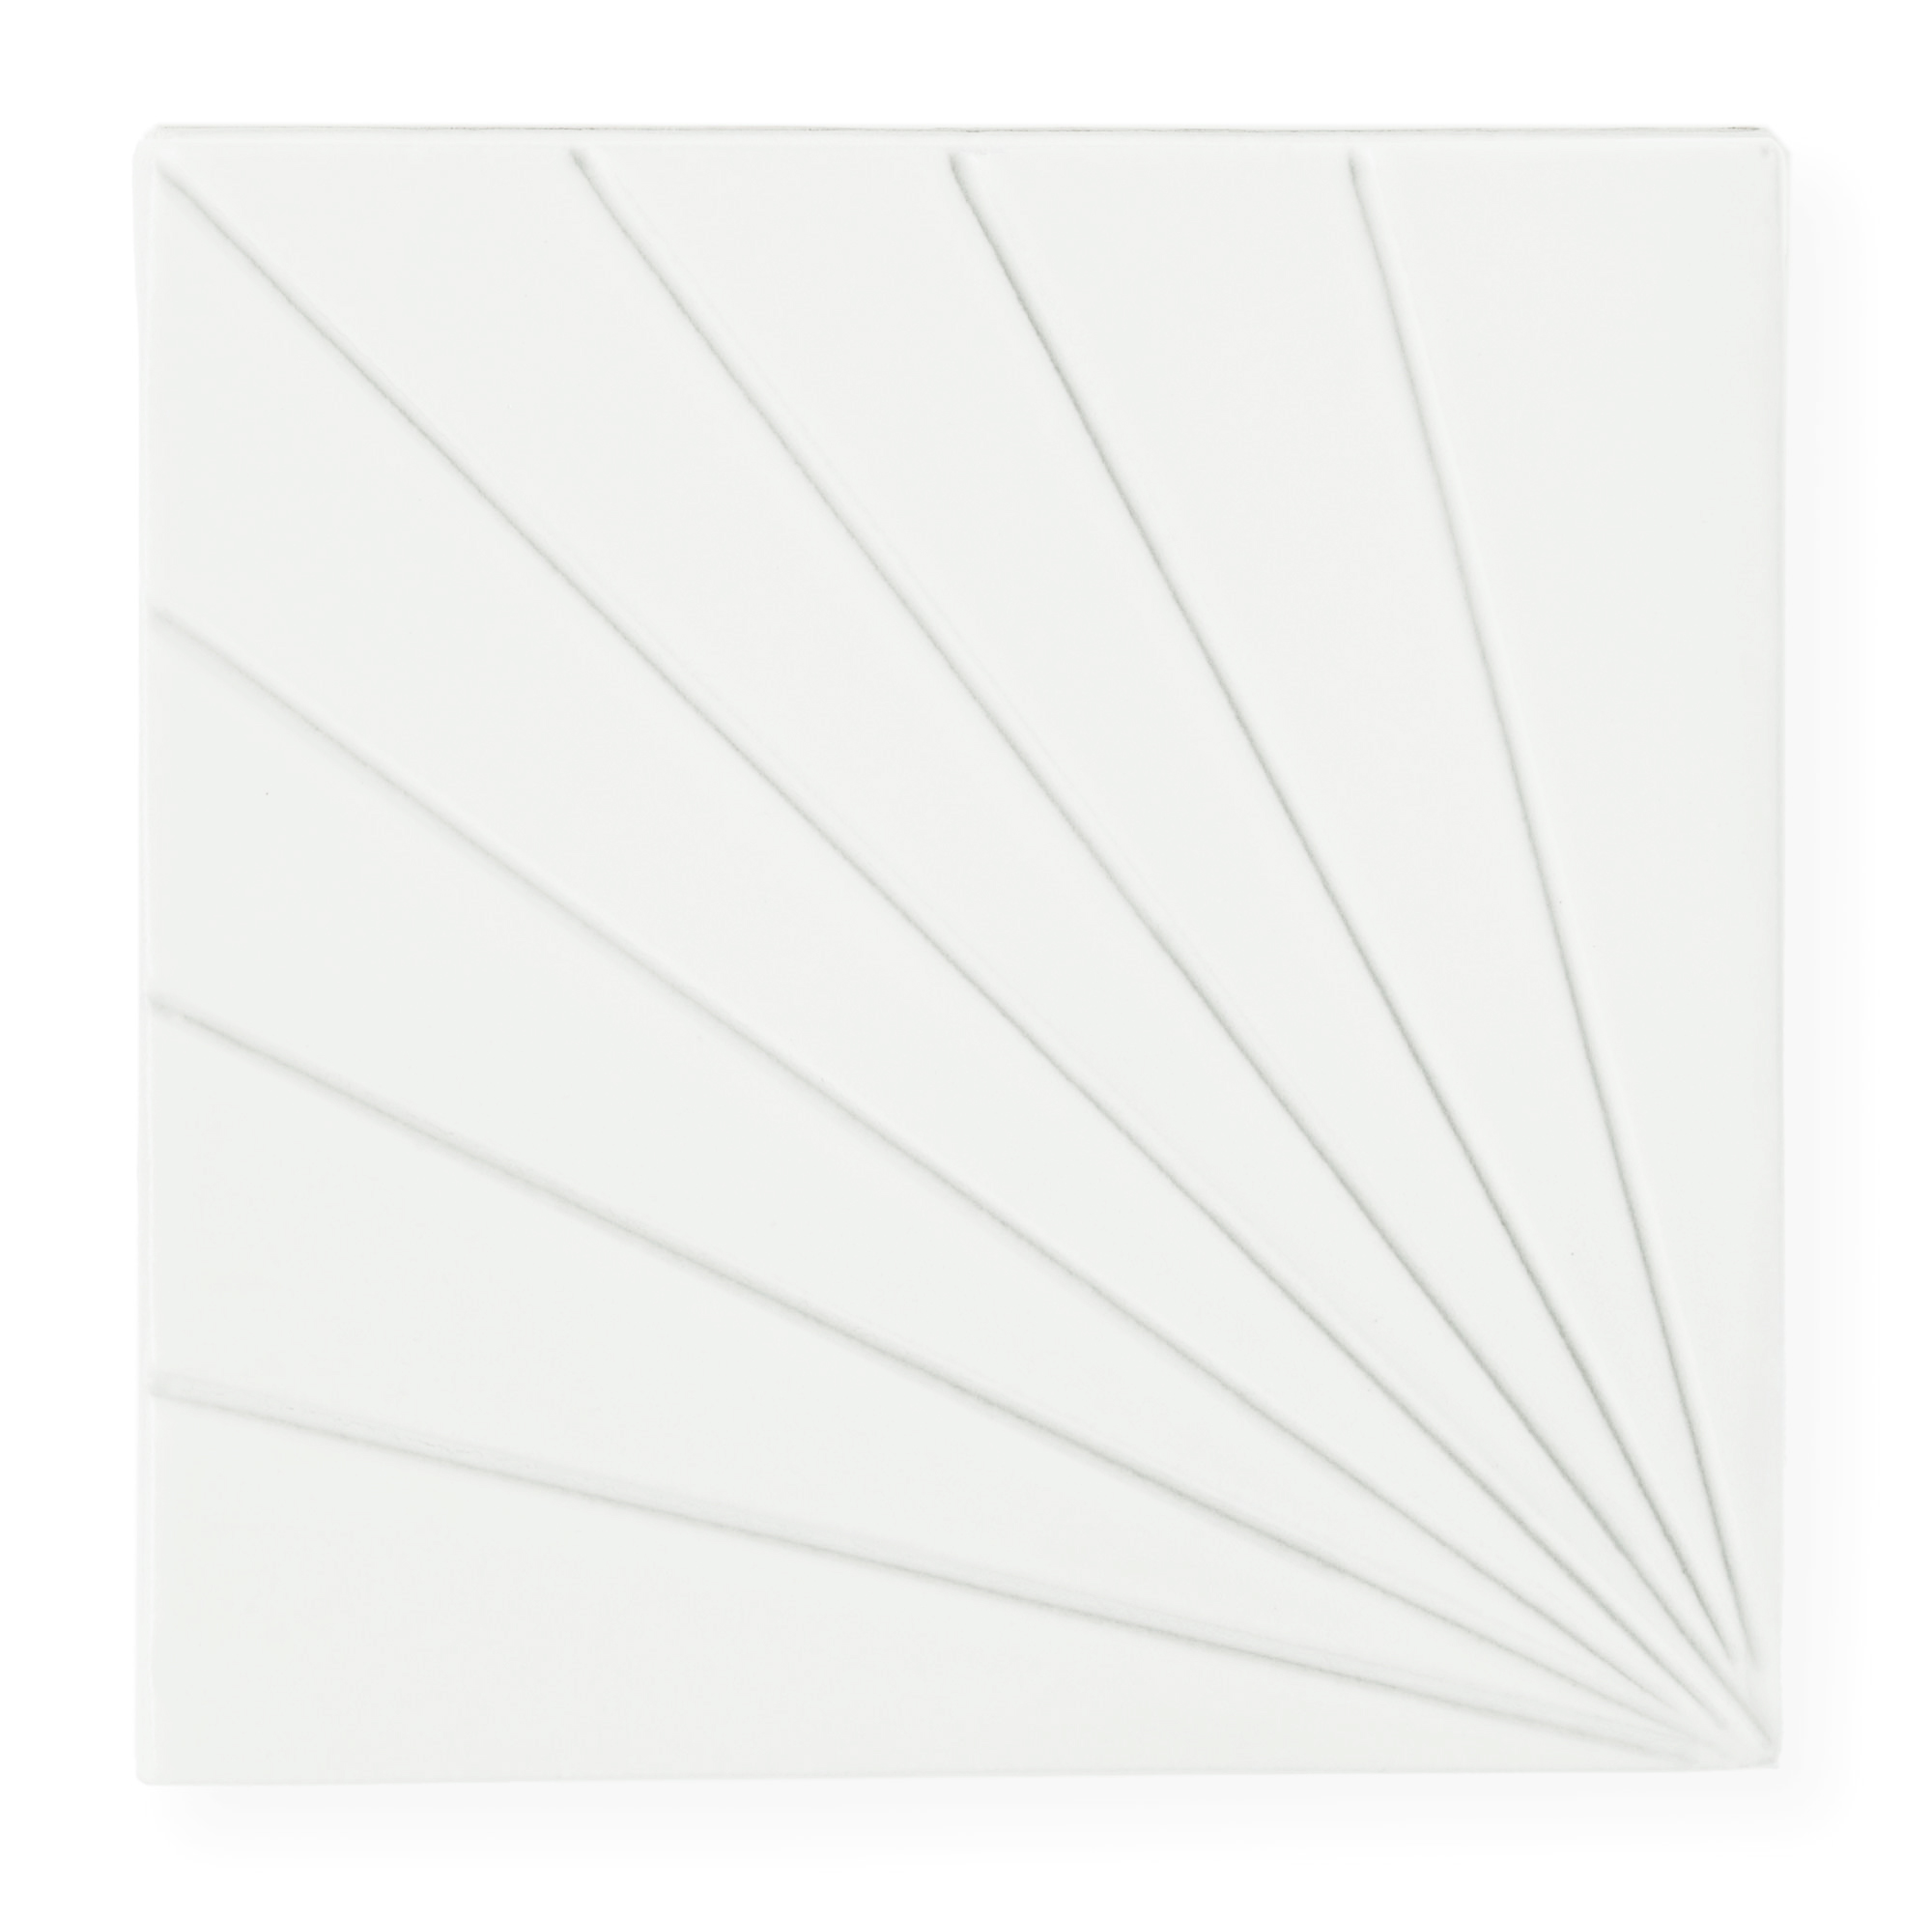 Sample: Tulum White 6x6 - Dimensional Relief Artisan Ceramic Tile